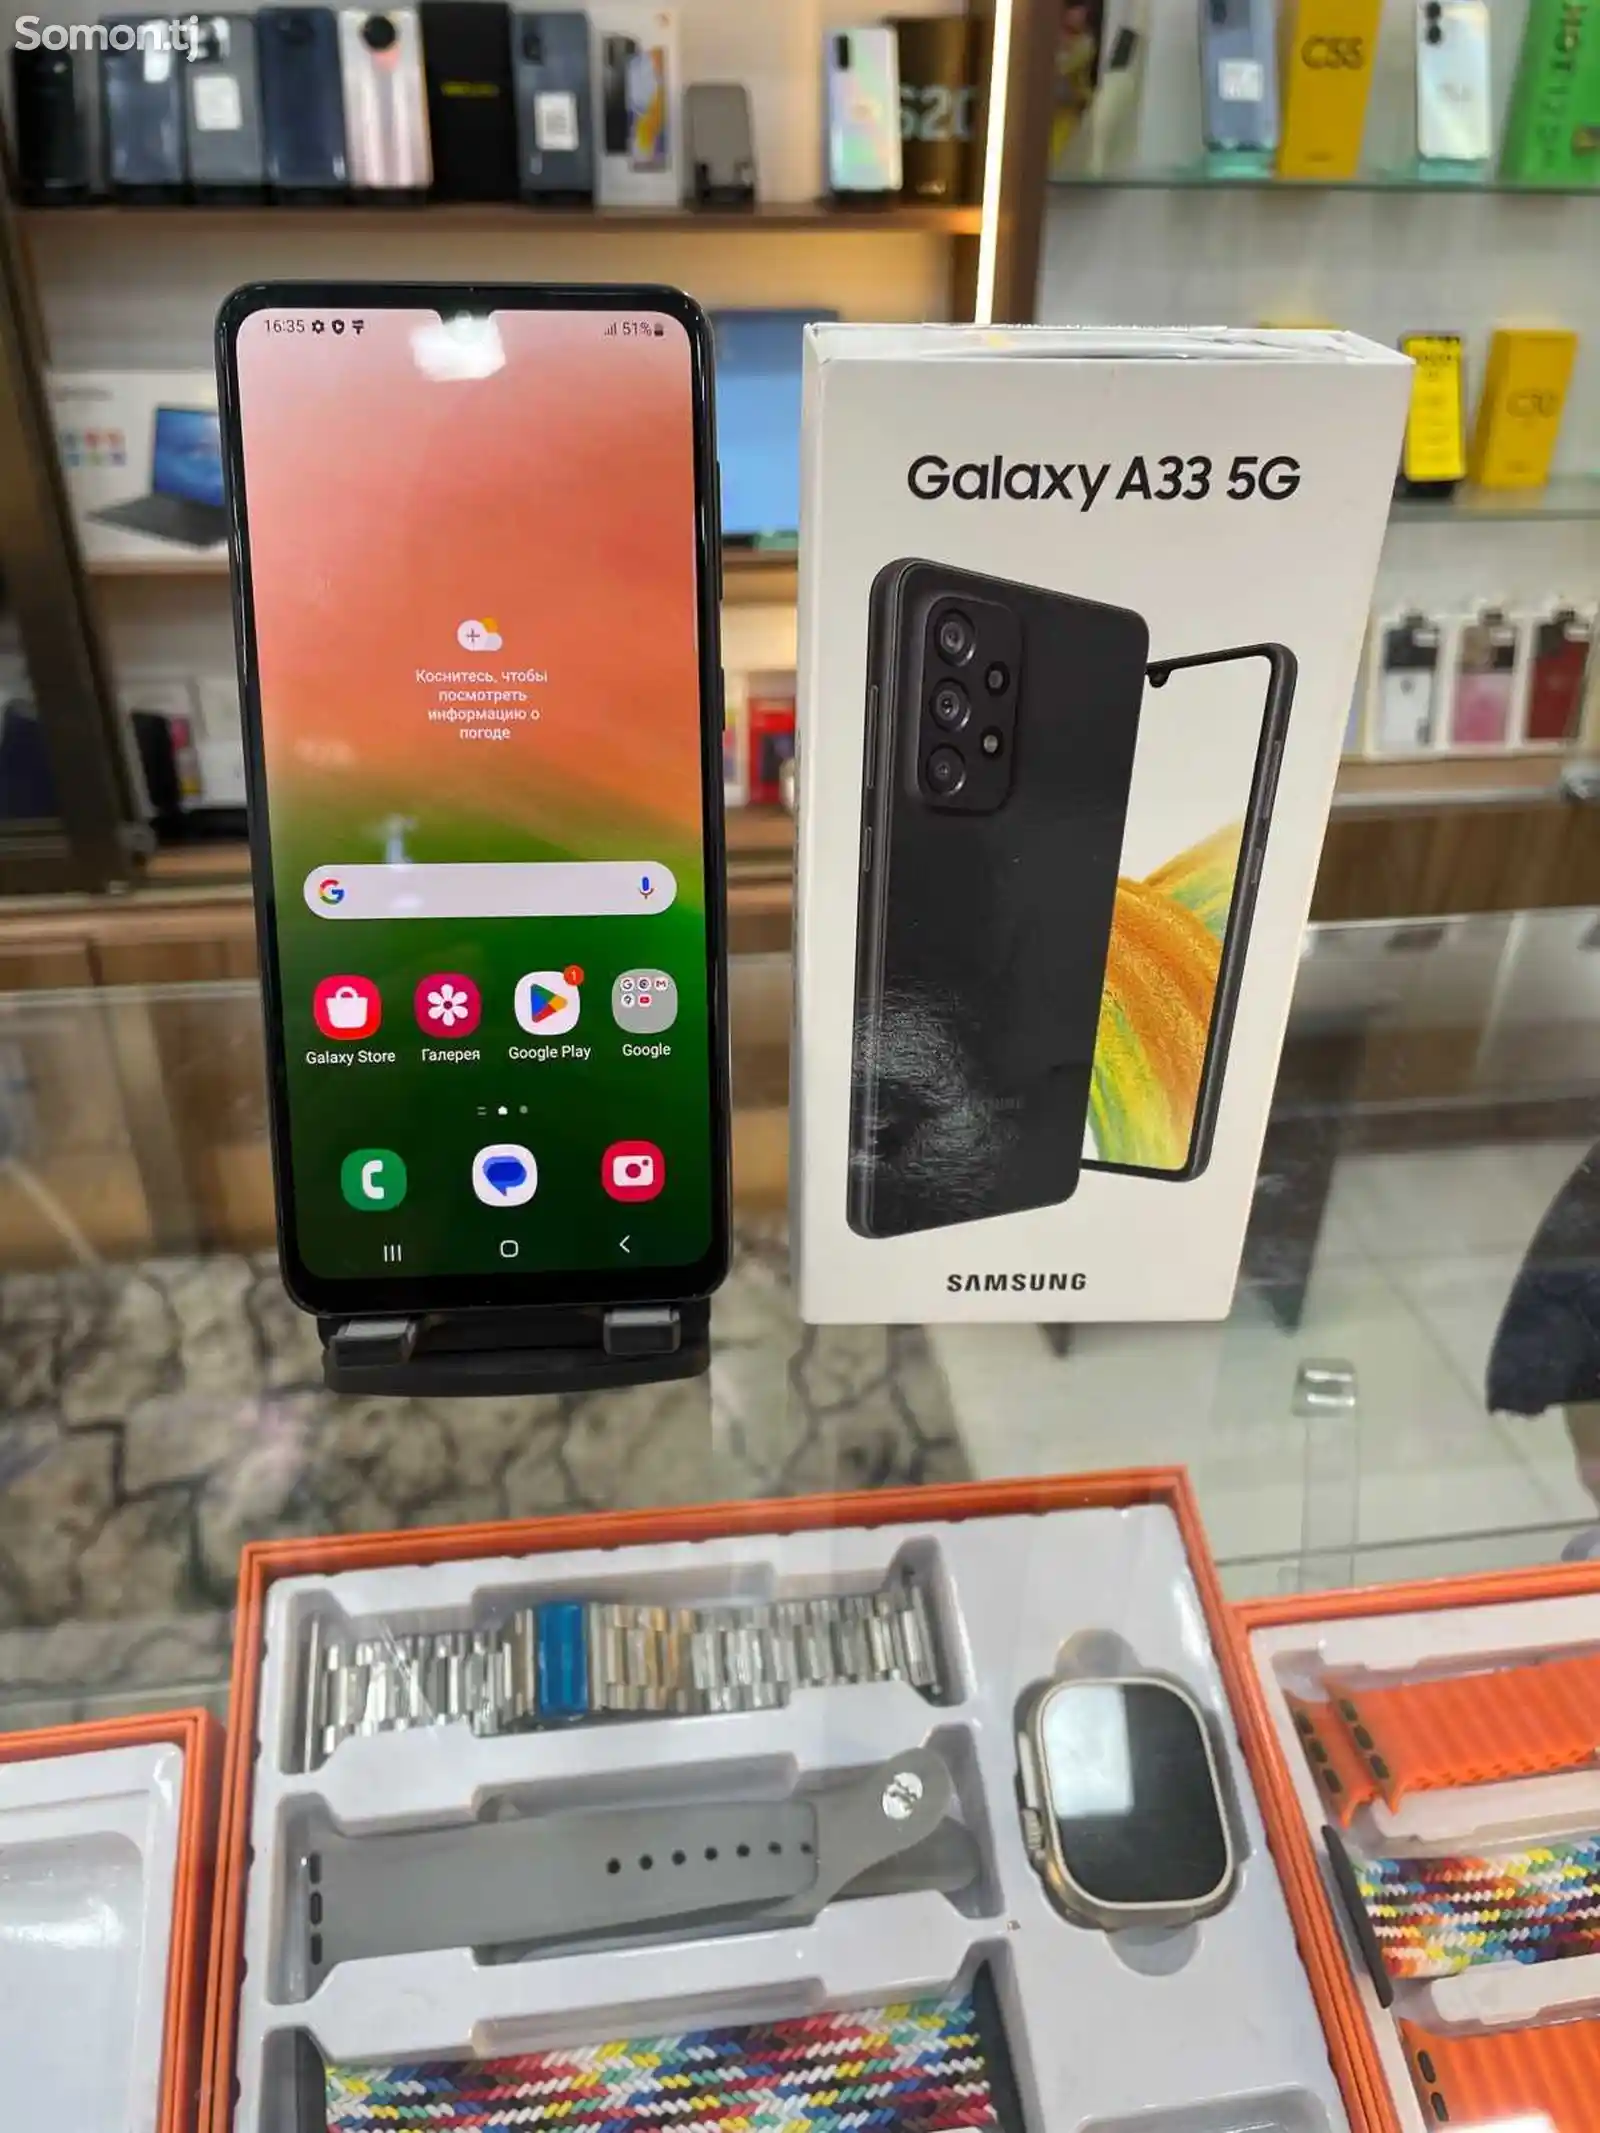 Samsung Galaxy S20-4